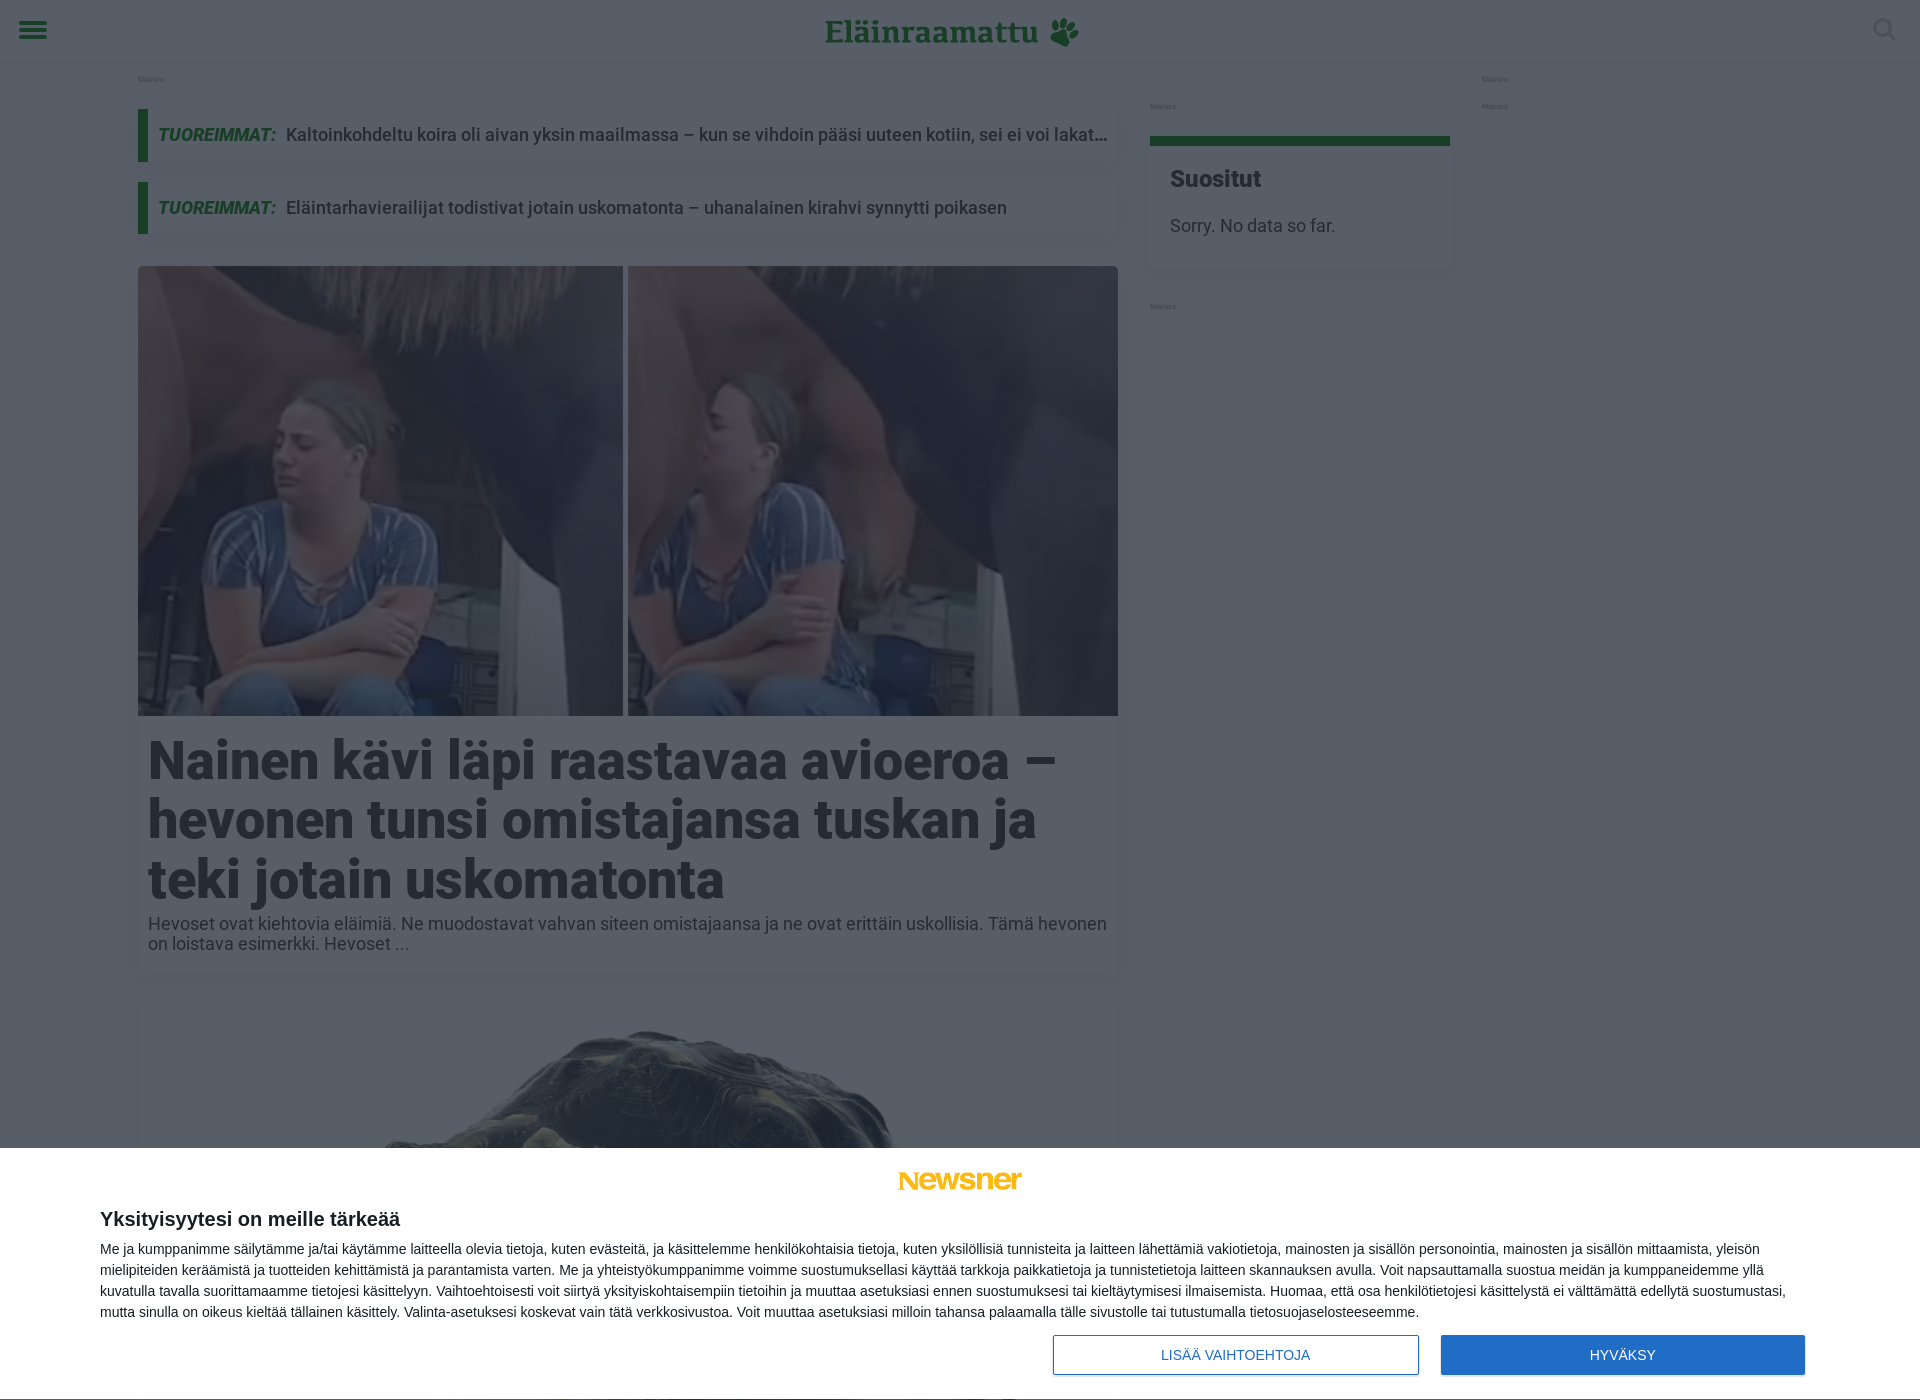 Näyttökuva elainraamattu.fi